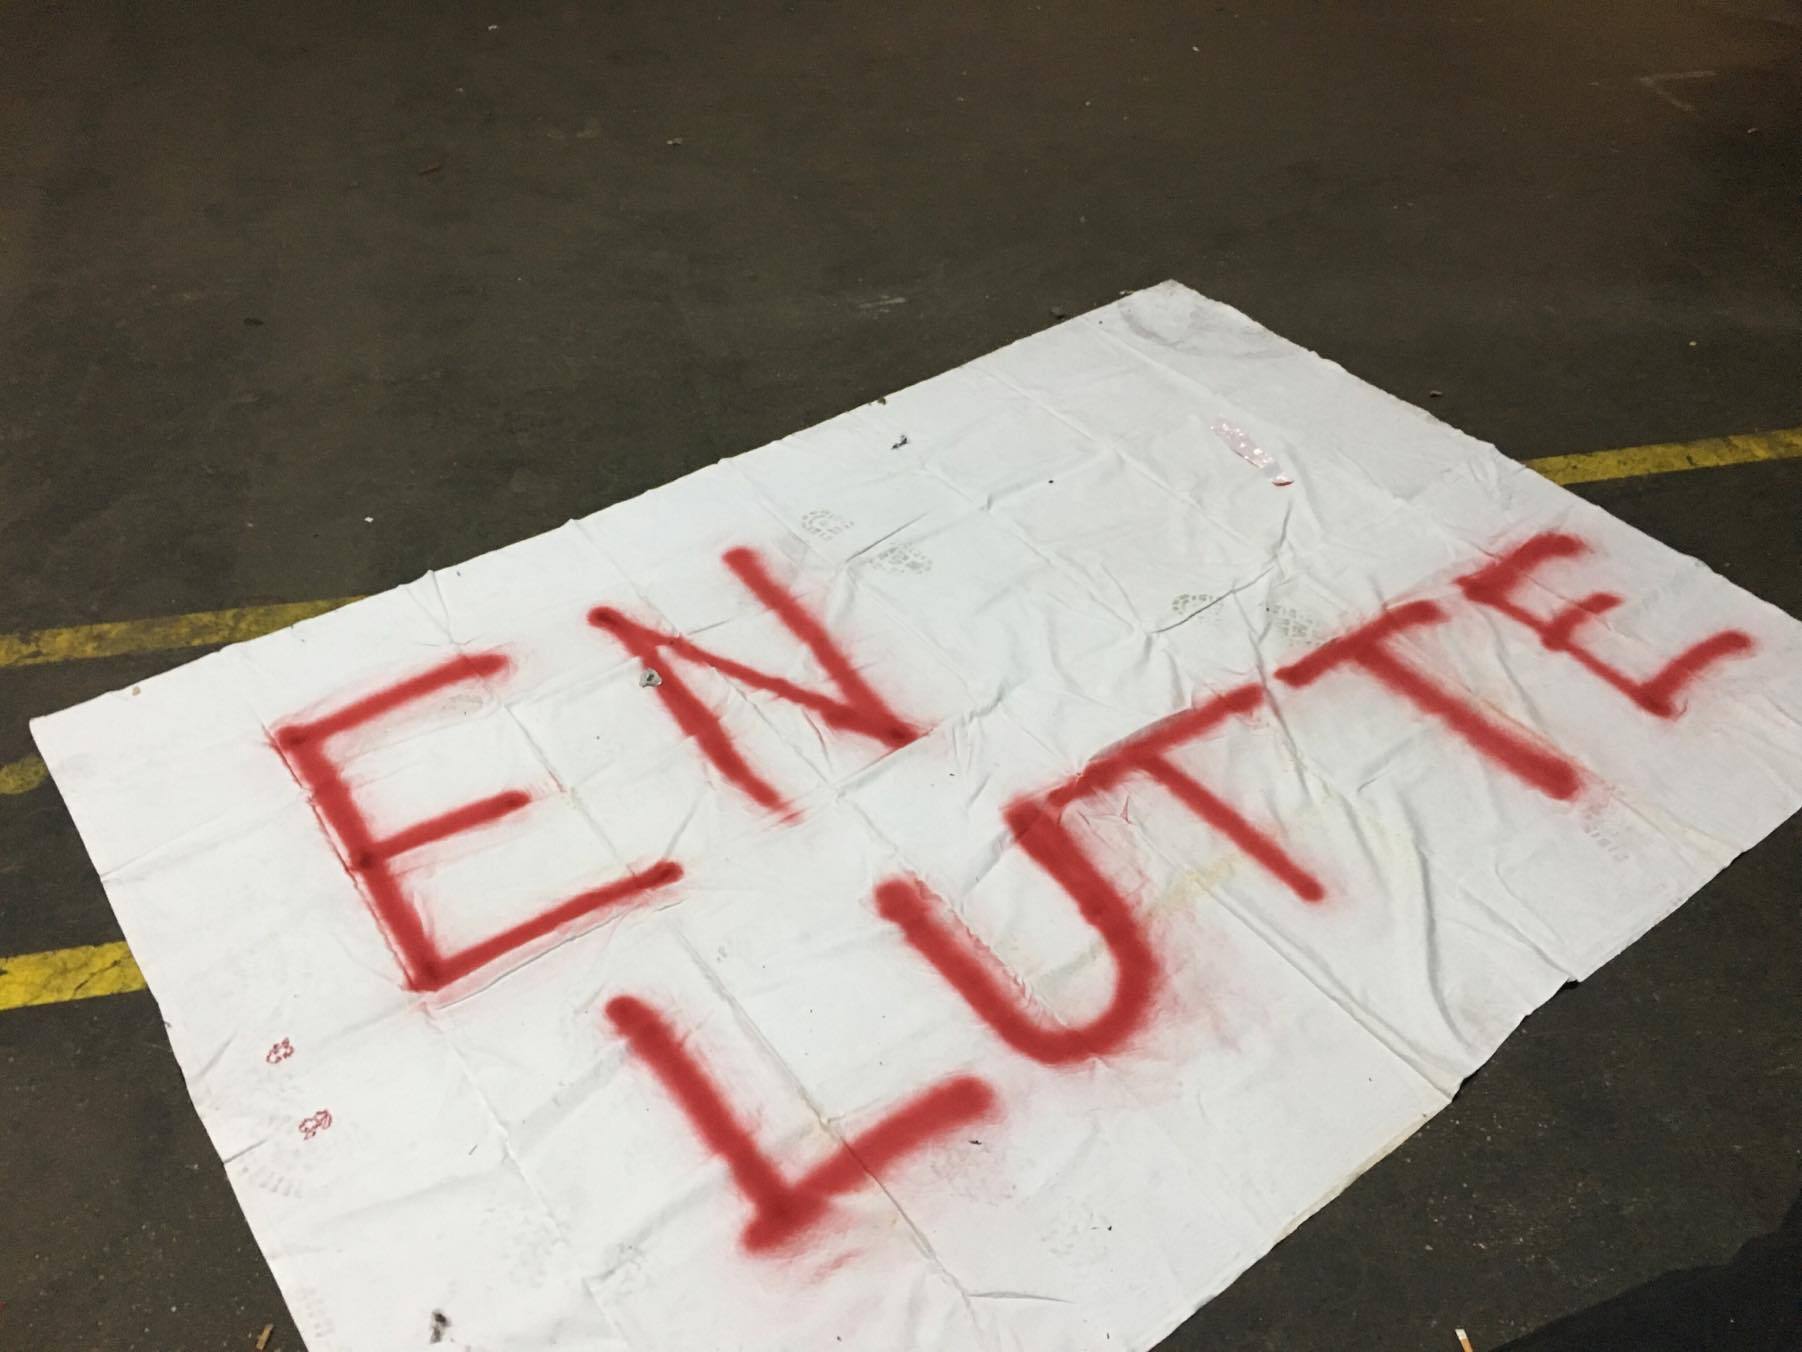 Au squat du Landy Sauvage à Saint-Denis le mardi 29 octobre 2018. Photographie : Sarah Belhadi pour Radio Parleur